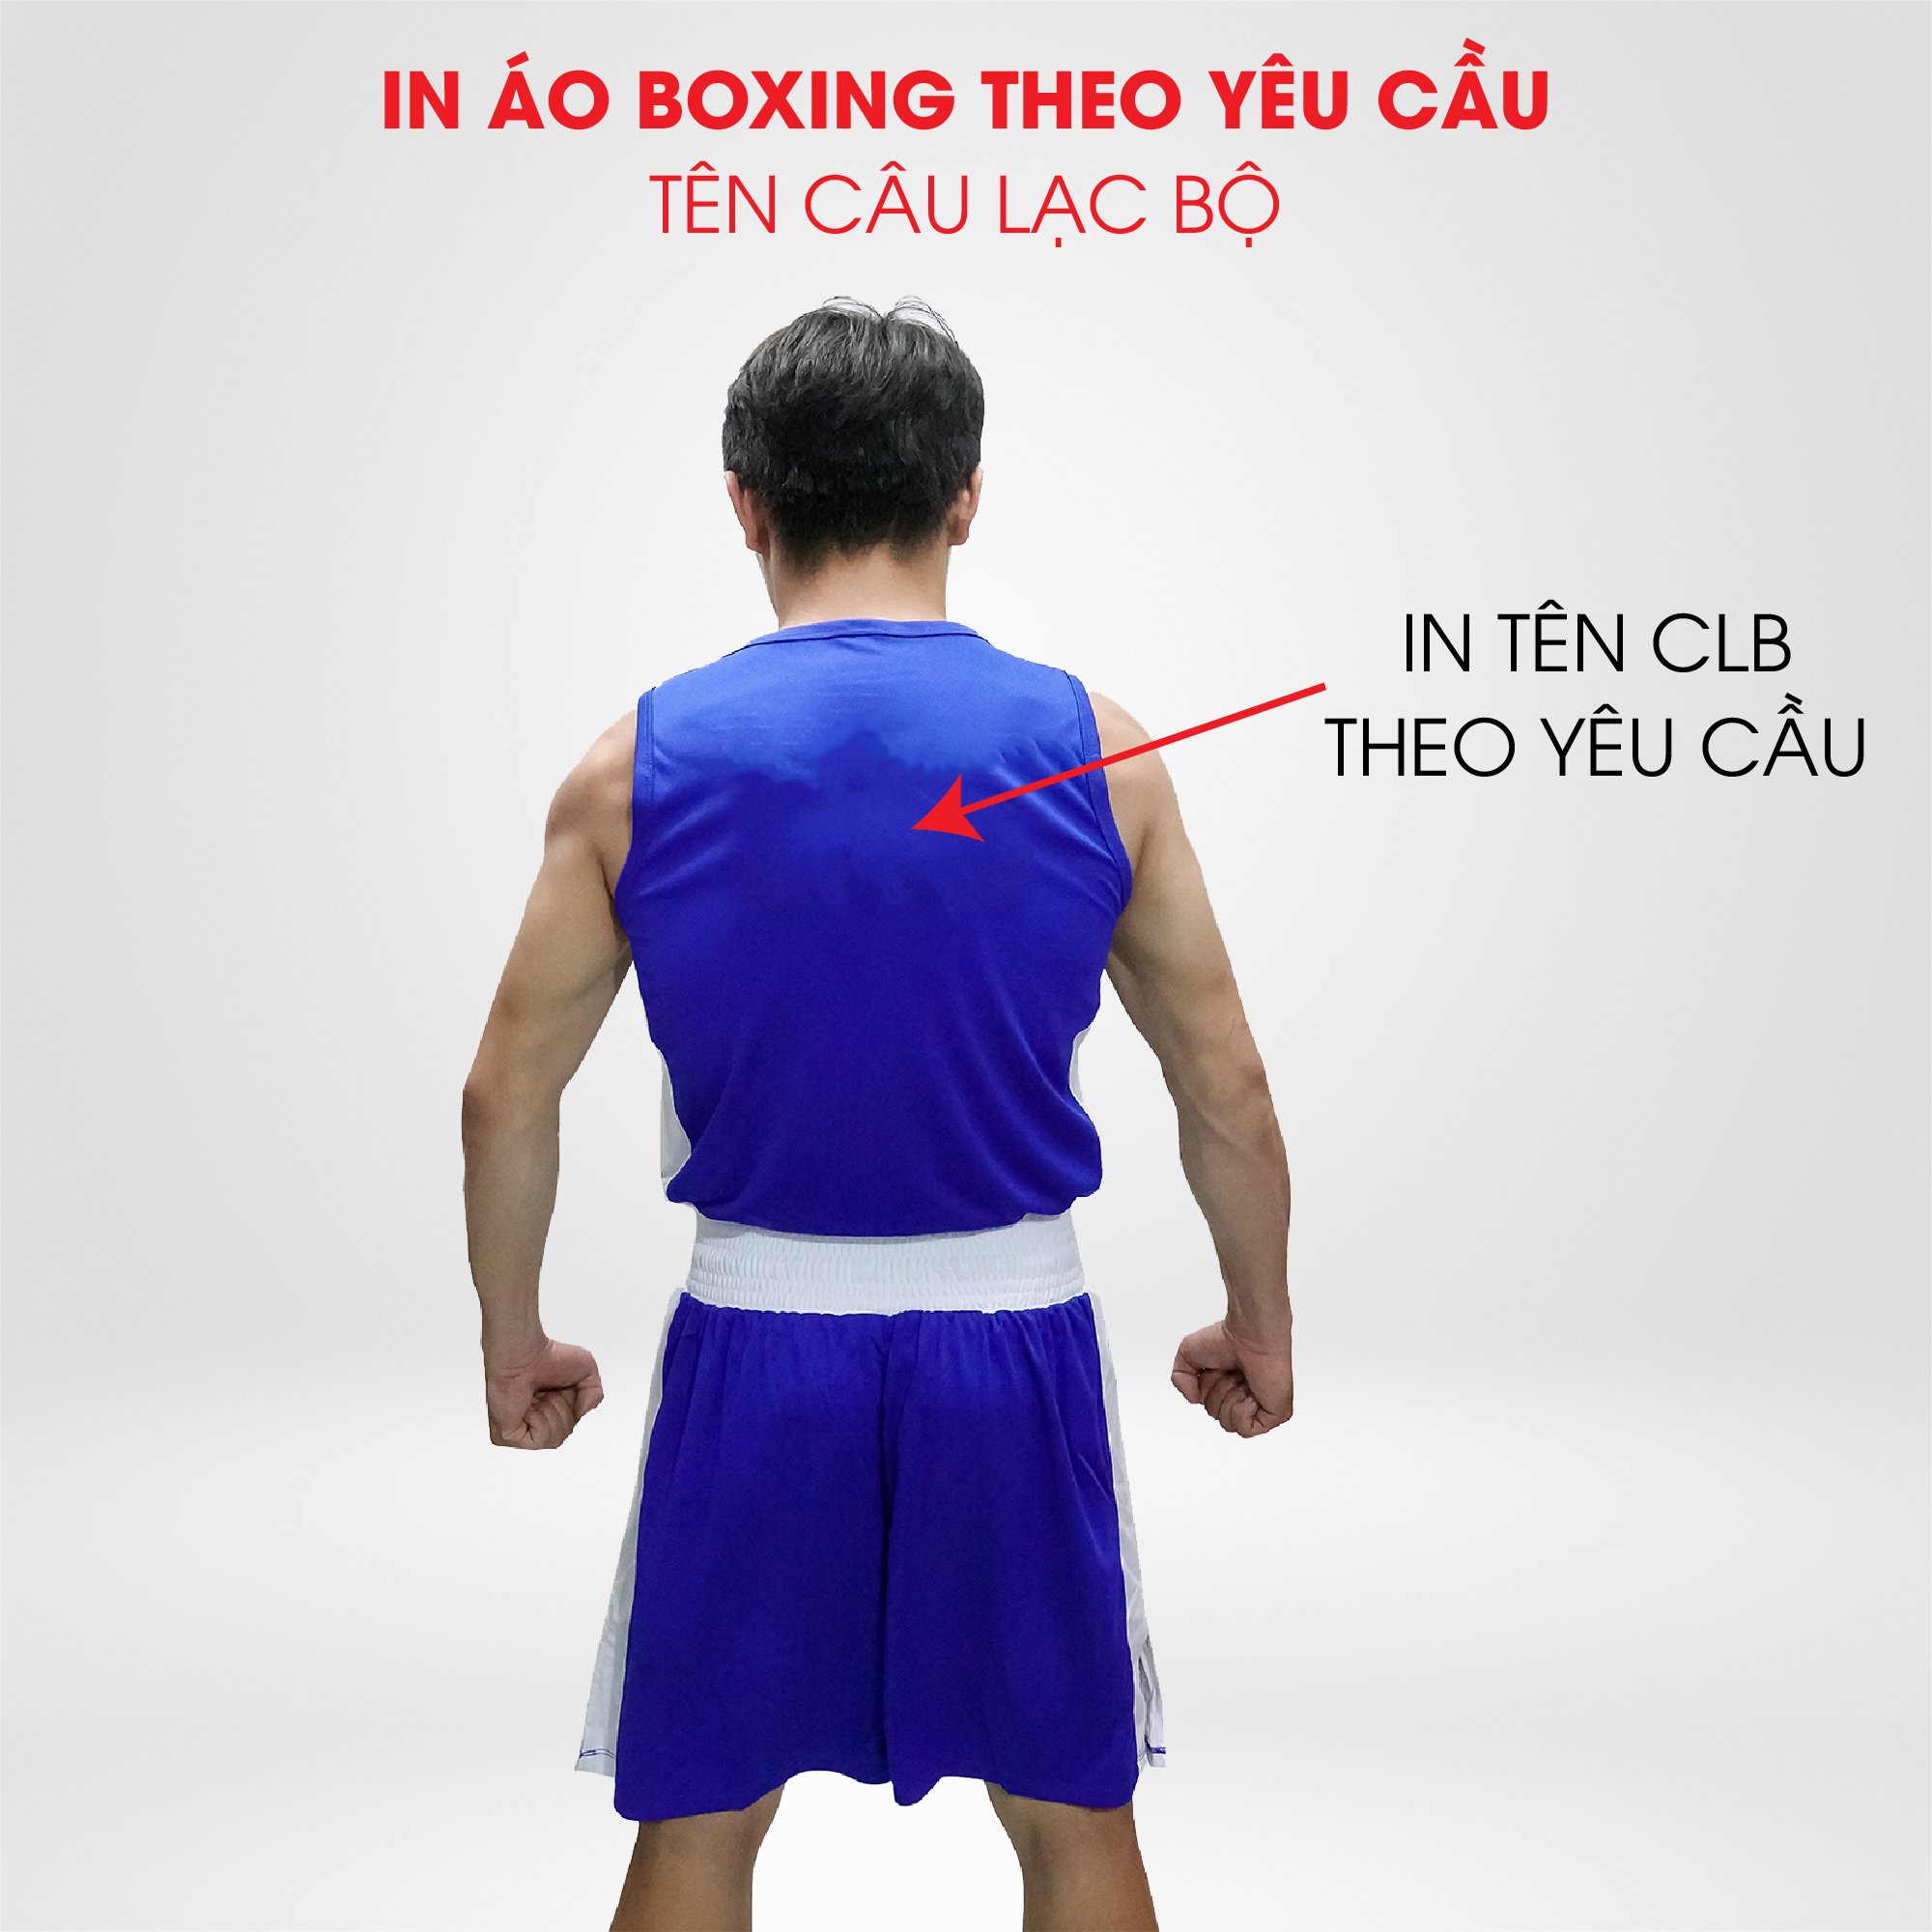 Thiết kế In Ấn Tên CLB Lên Quần Áo Boxing Theo Yêu Cầu